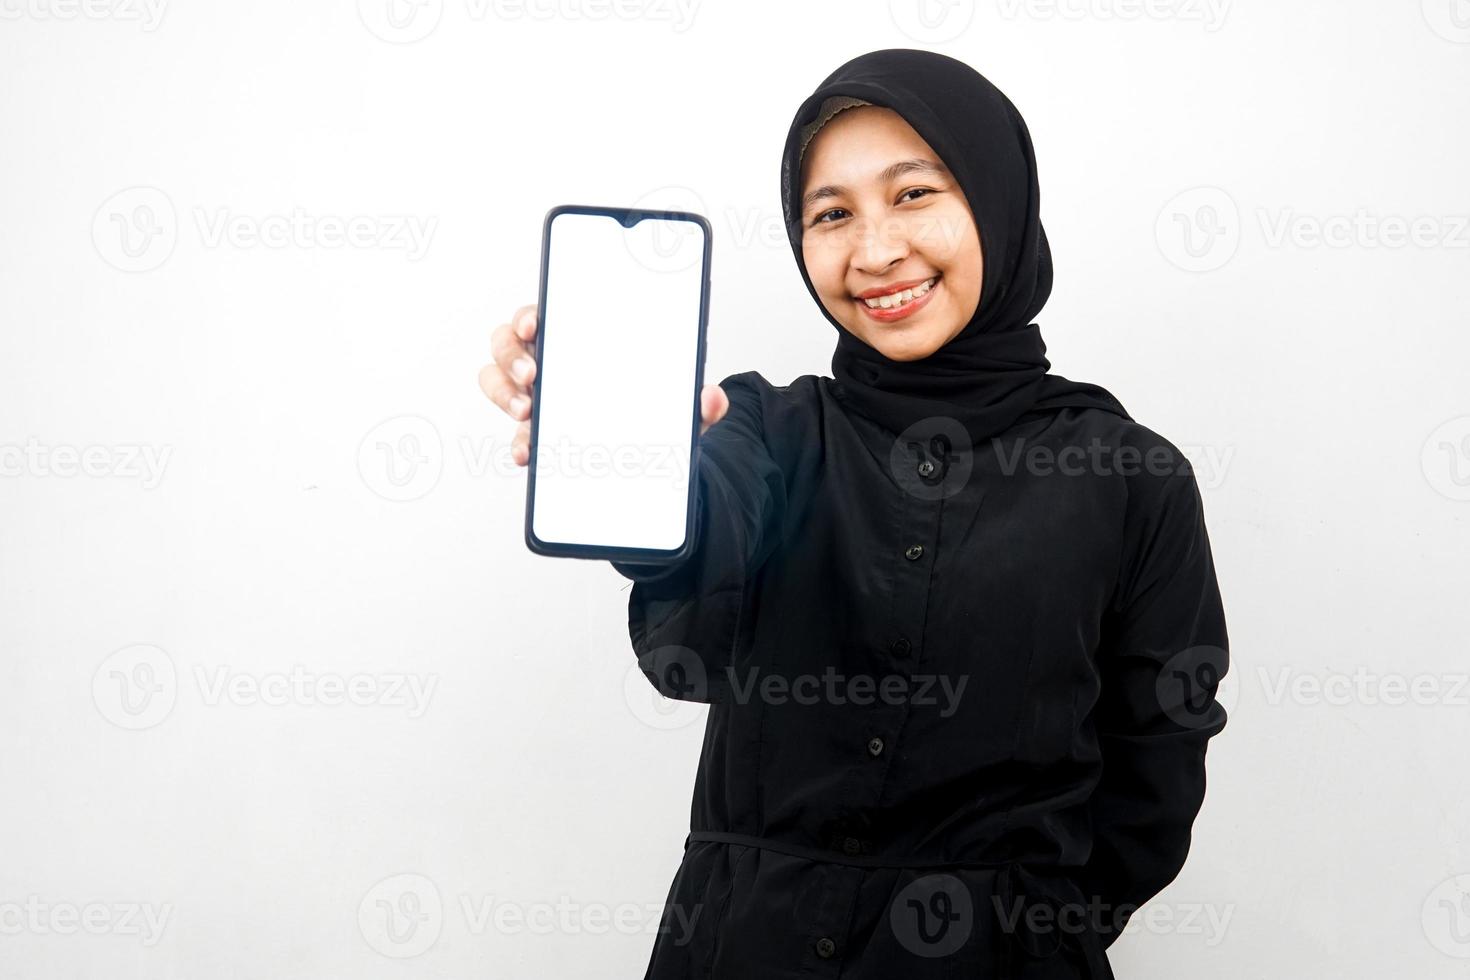 belle jeune femme musulmane asiatique avec les mains tenant un smartphone, faisant la promotion de l'application, faisant la promotion de quelque chose, souriante confiante, enthousiaste et joyeuse, isolée sur fond blanc photo